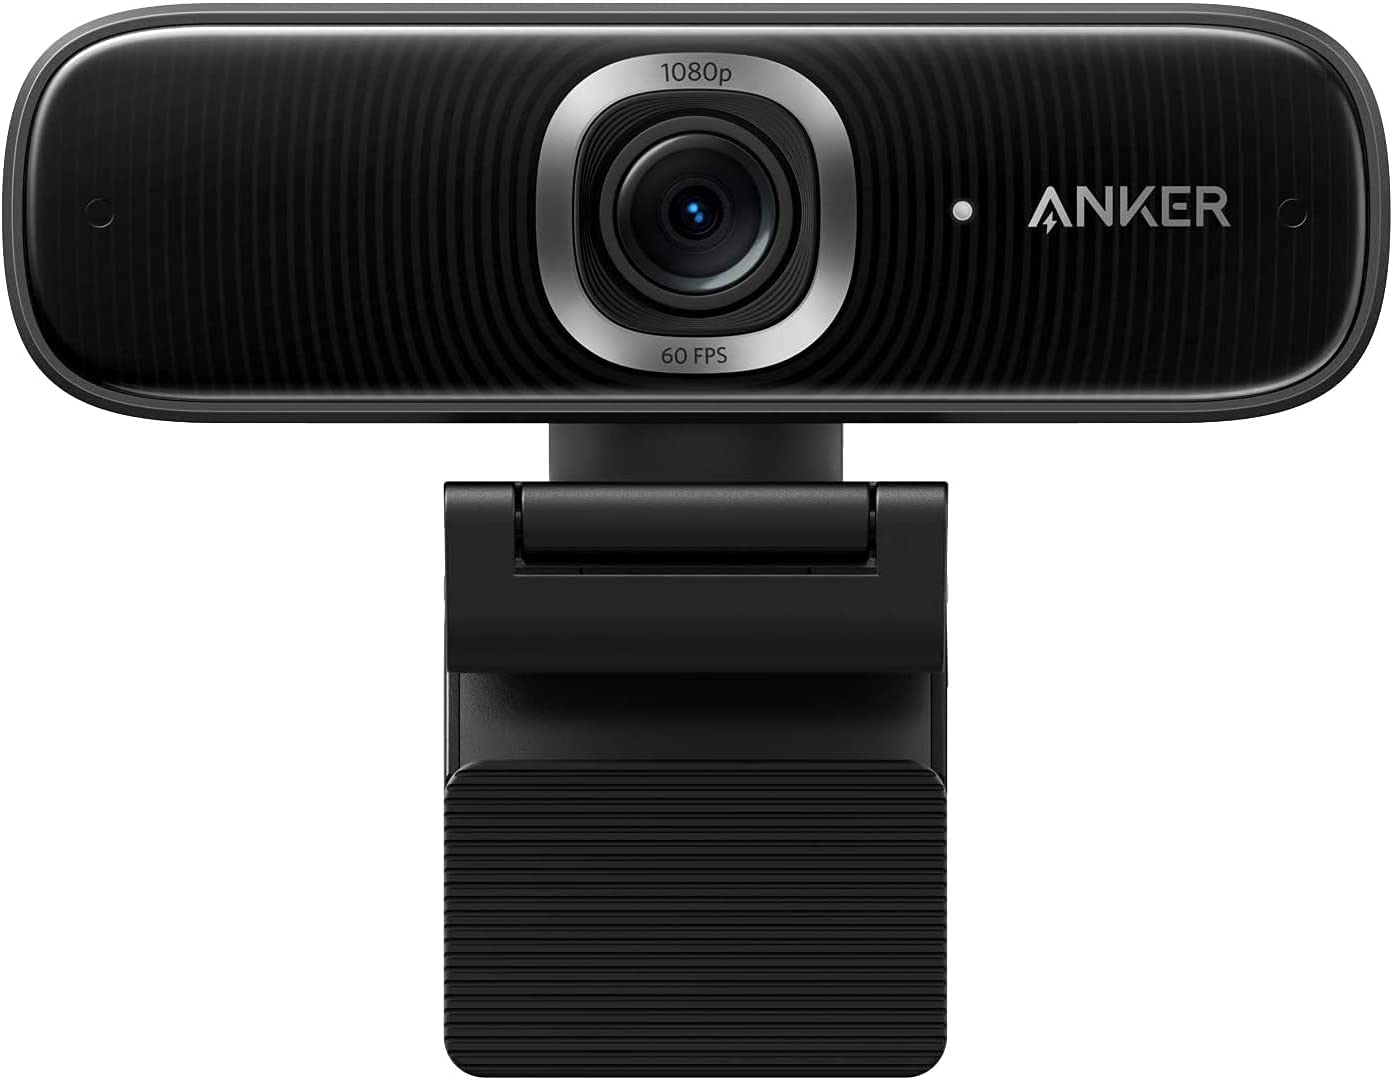 ウェブカメラ Anker PowerConf C300 AI機能搭載 フル HD モーショントラッキング プライバシーカバー ノイズリダクション 予約販売品 オートゲインコントロール 1080p 高速オートフォーカス 高画質 画角調節機能 Zoom認証 大決算セール